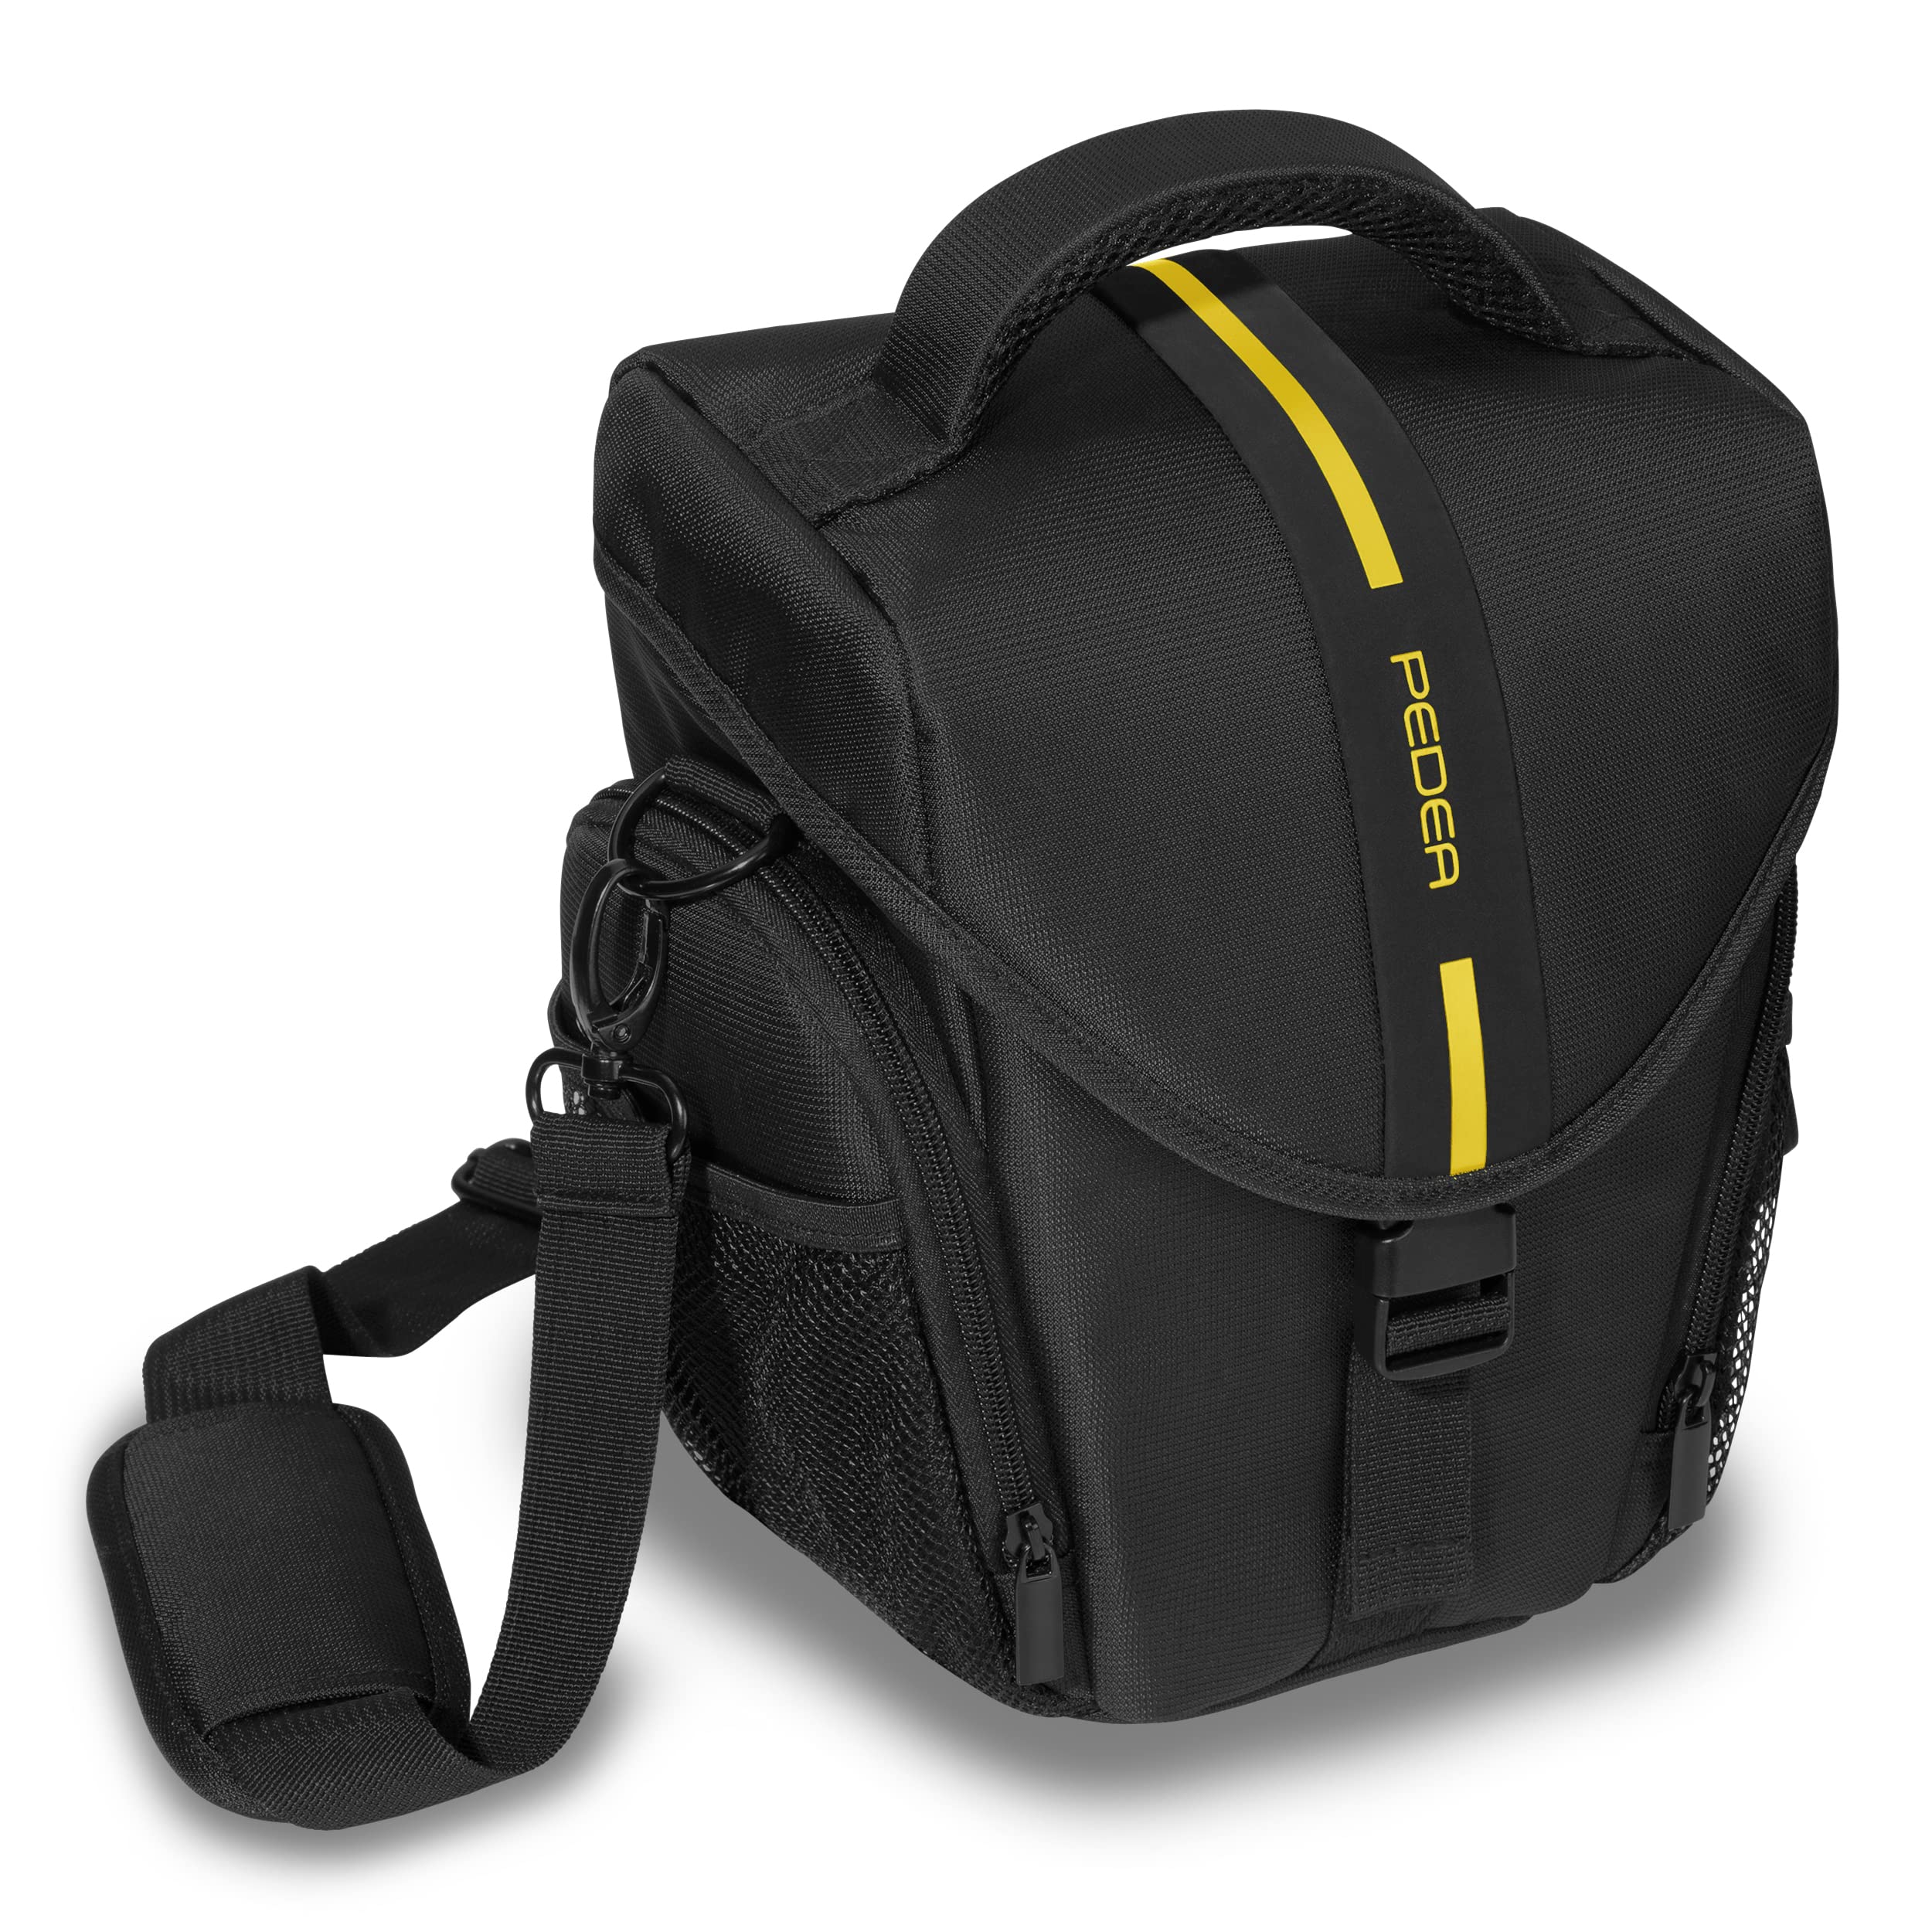 PEDEA DSLR-Kameratasche *Essex* Fototasche für Spiegelreflexkameras mit wasserdichtem Regenschutz, Tragegurt und Zubehörfächern, Gr. L schwarz/gelb